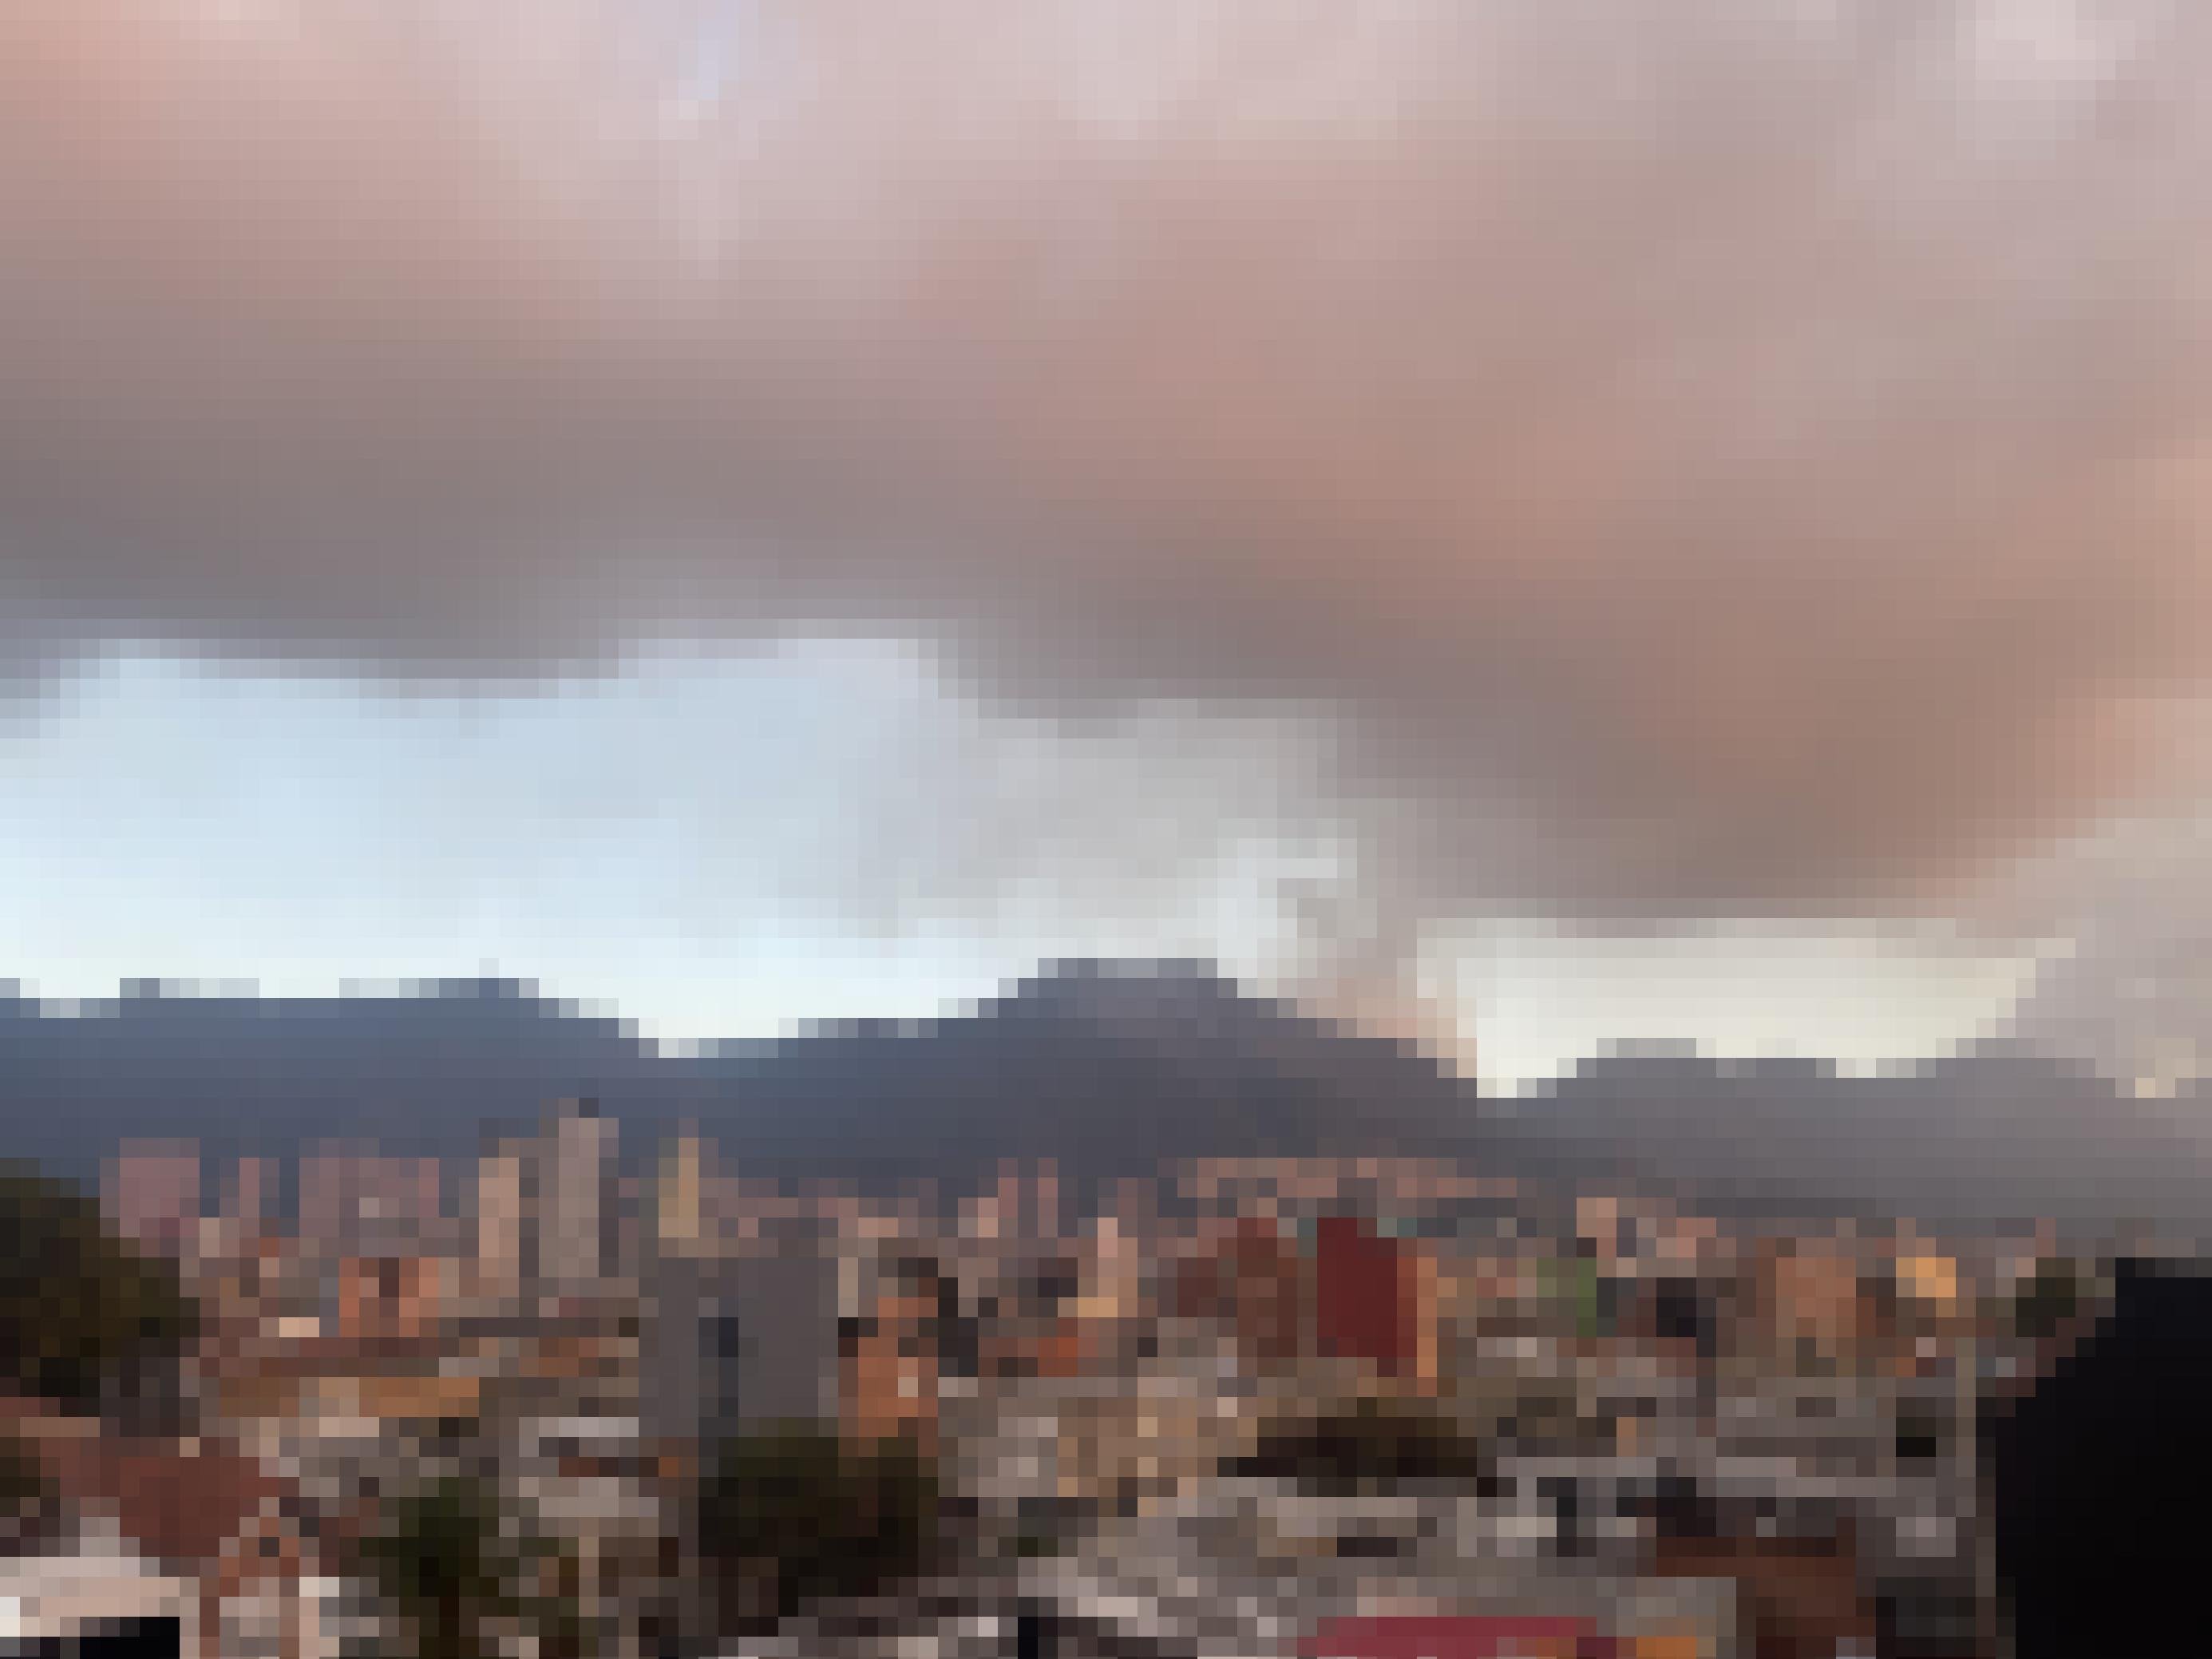 Stadtpanorama von Bogotá mit Hochhäusern. Im Hintergrund eine Gebirgskette. Von einem Gipfel steigt Rauch. Der zieht sich horizontal komplett übers Bild. Zwischen Bergkette und Rauchkette ist nur ein schmaler hellblauer Streifen Himmel zu sehen.